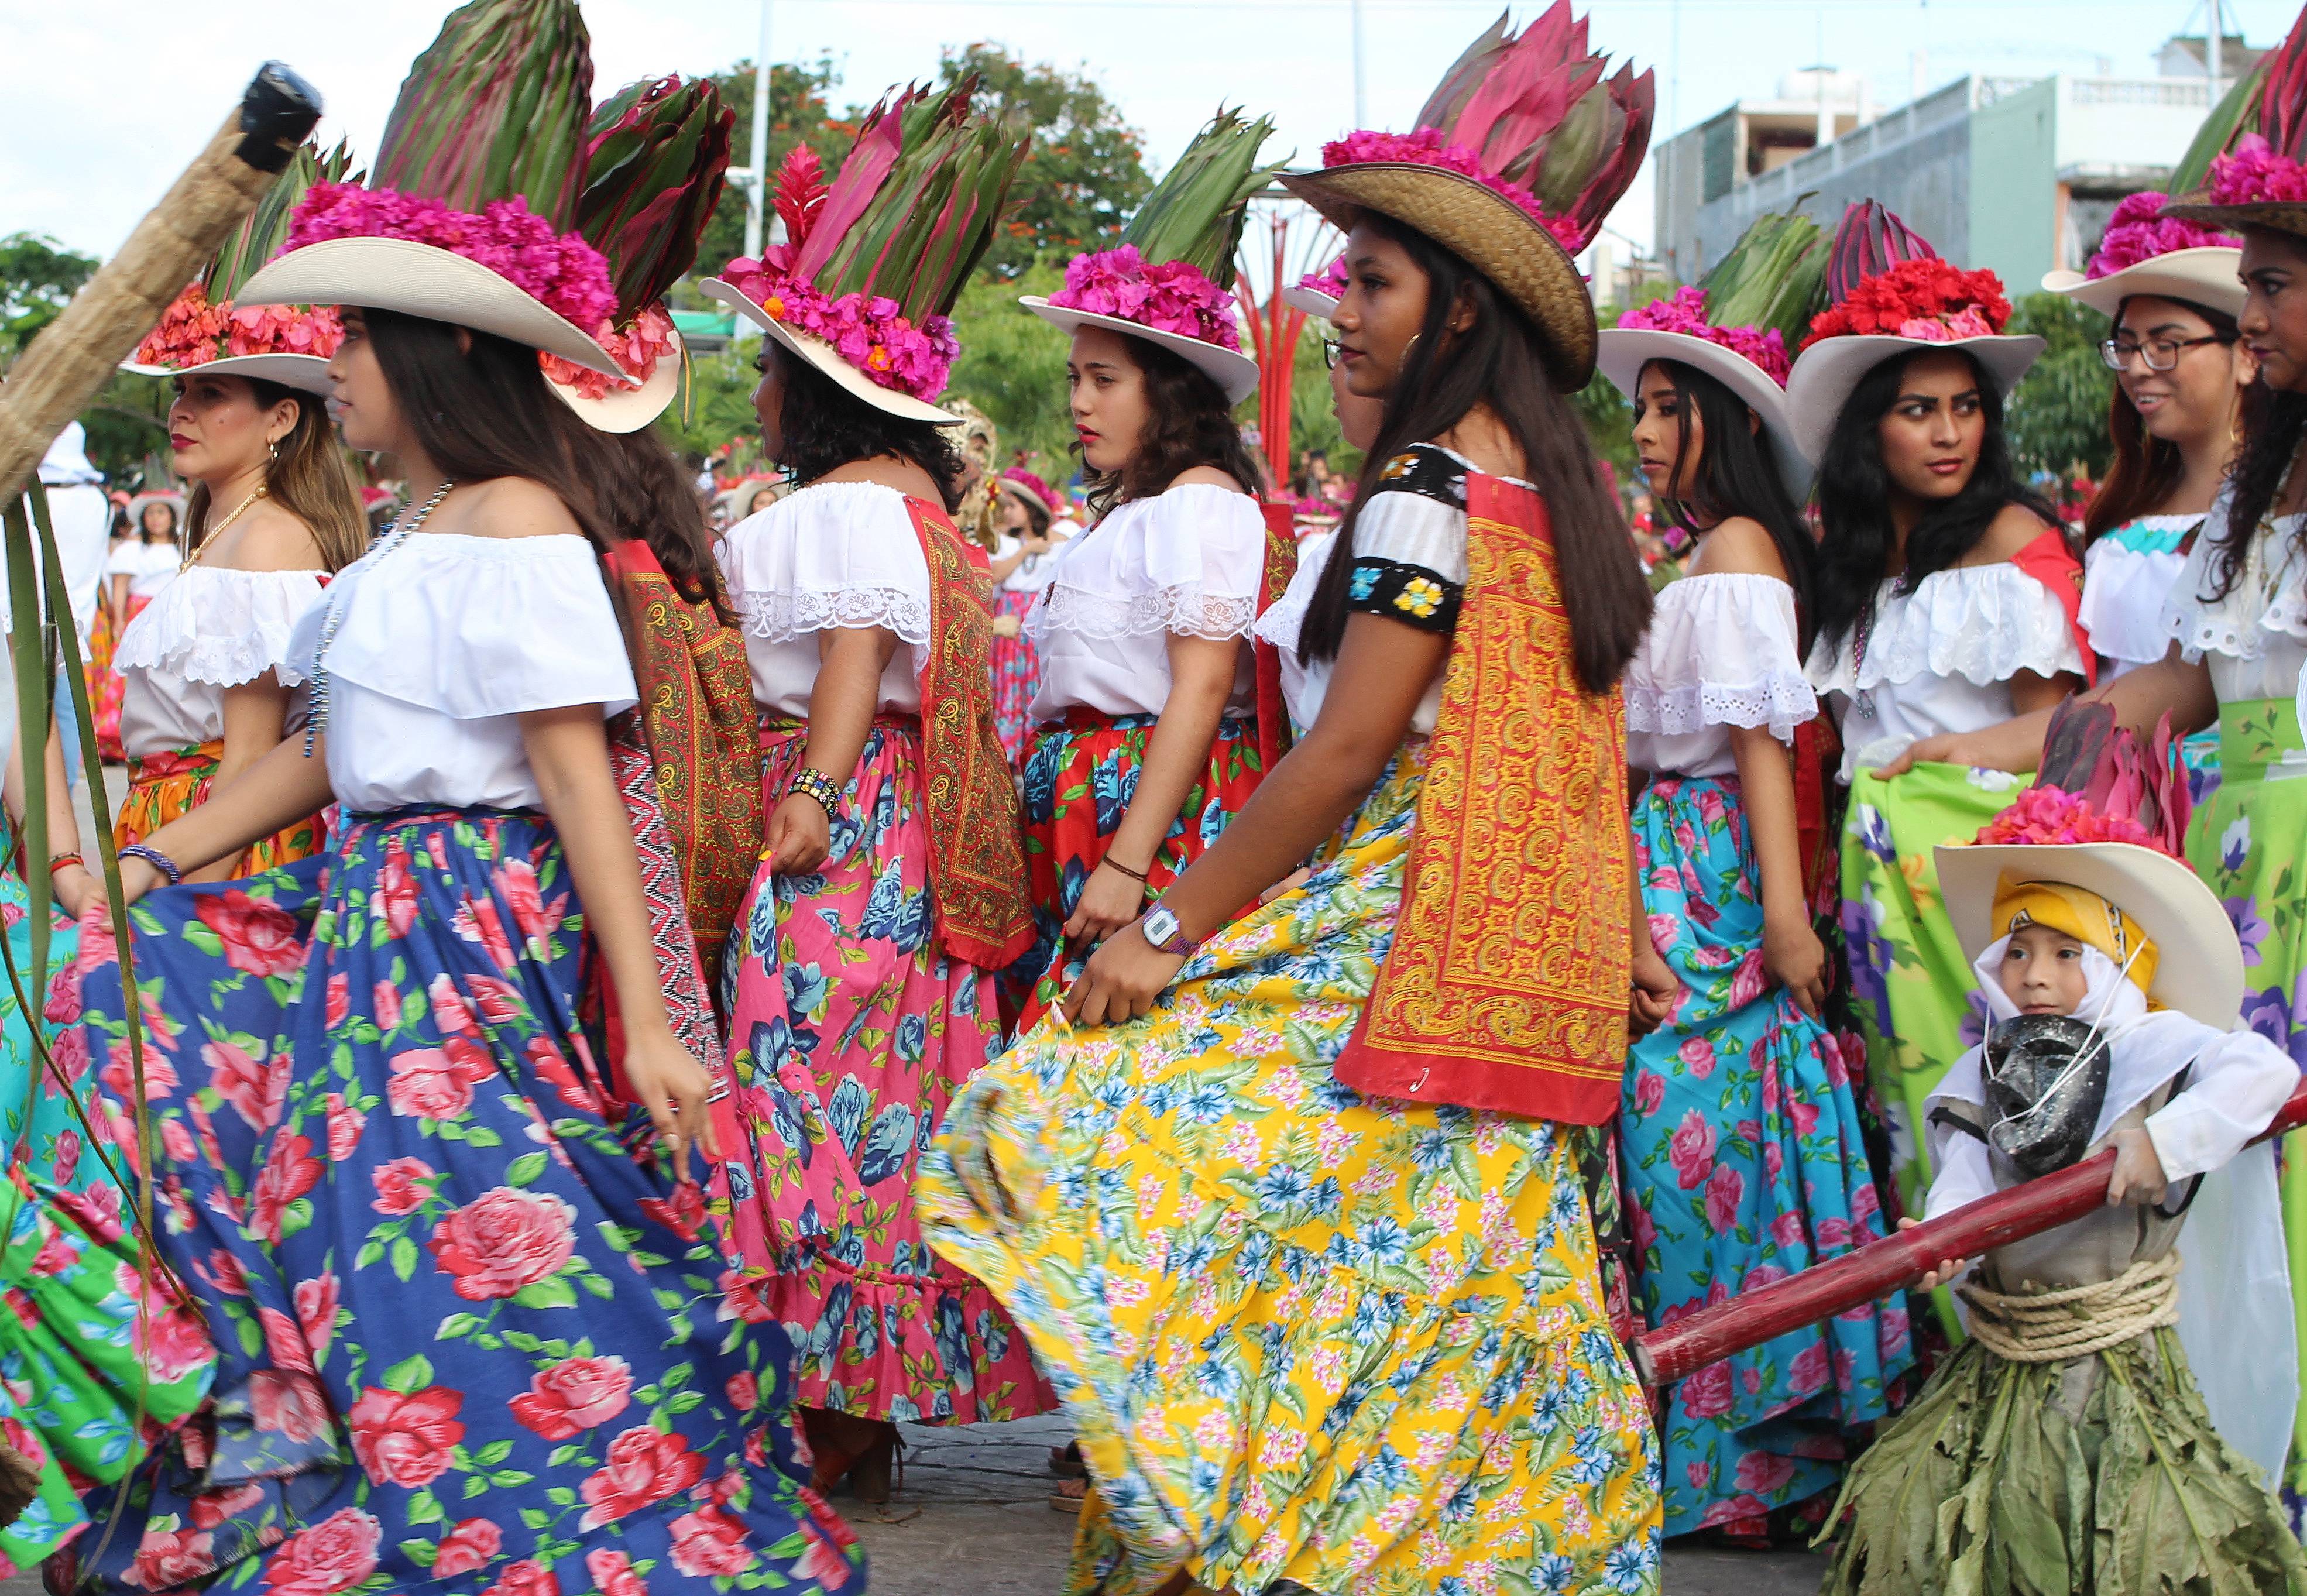 Exposition digitale "Tenosique, un carnaval mexicain unique au monde"